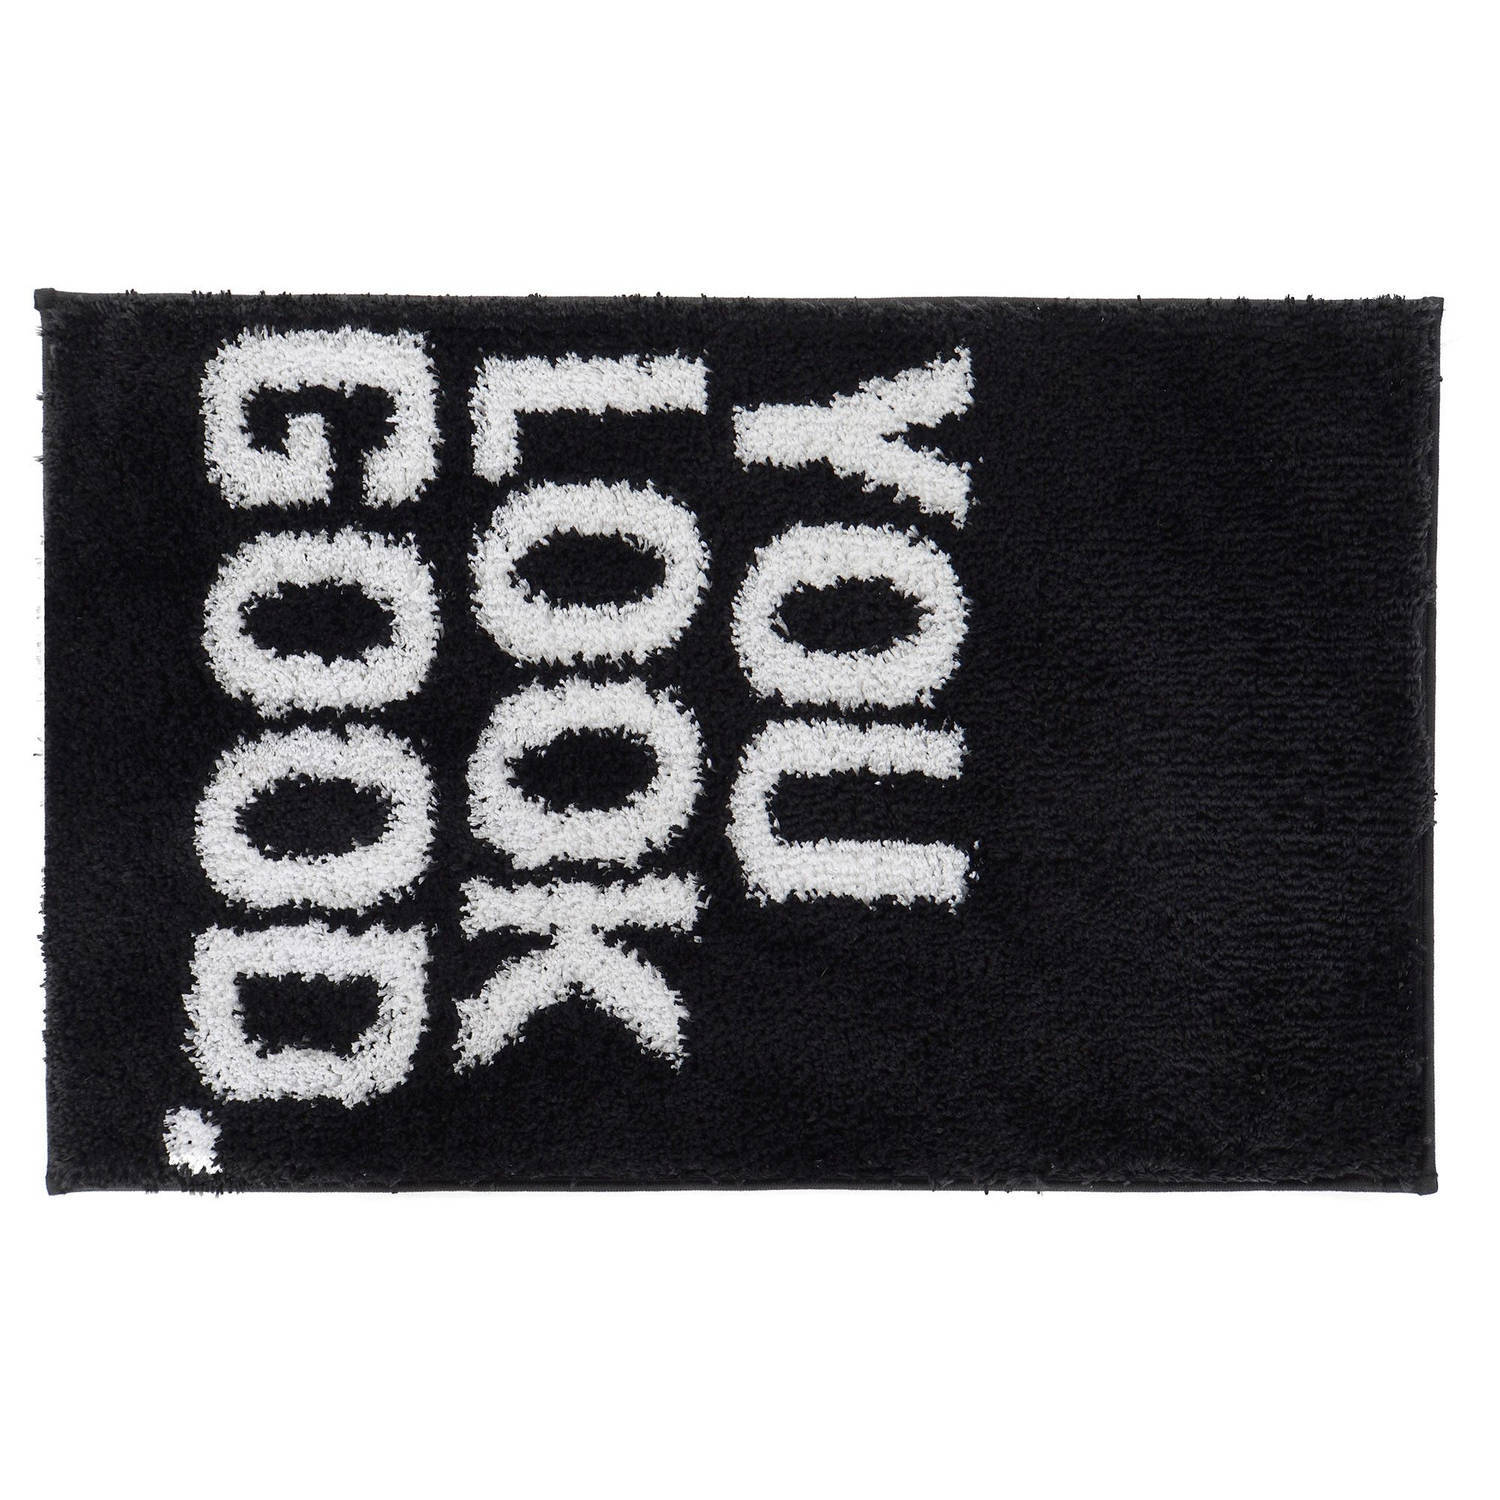 Items RawGoods - Badmat/badkamerkleed You Look Good zwart 80 x 50 cm rechthoekig - Matten voor de badkamer